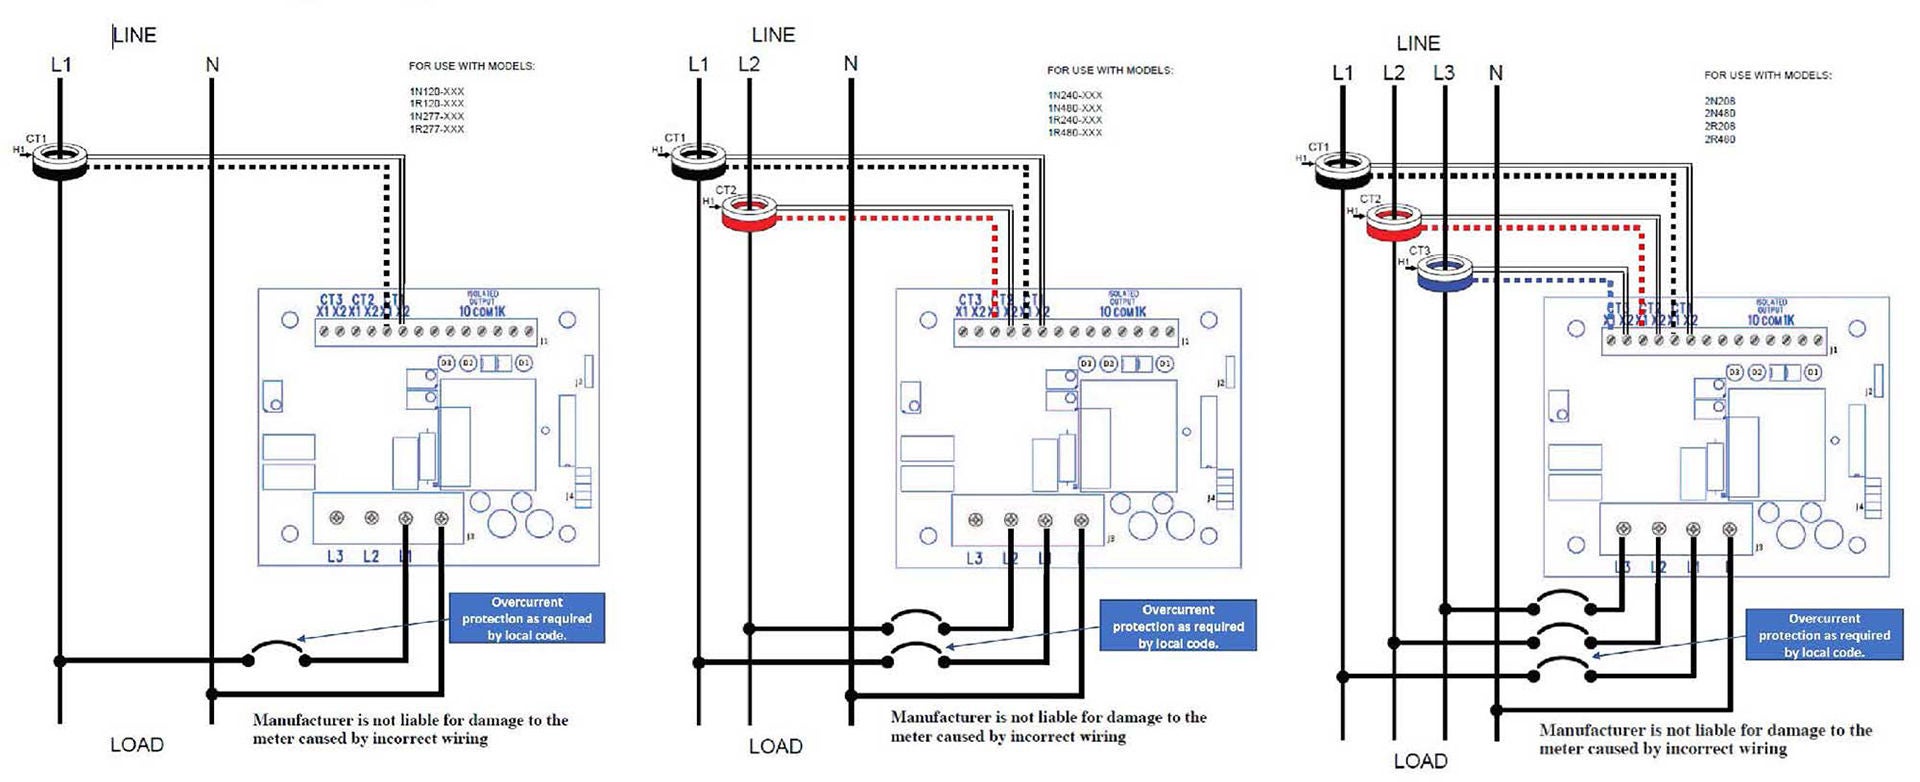 Submeter wiring diagram